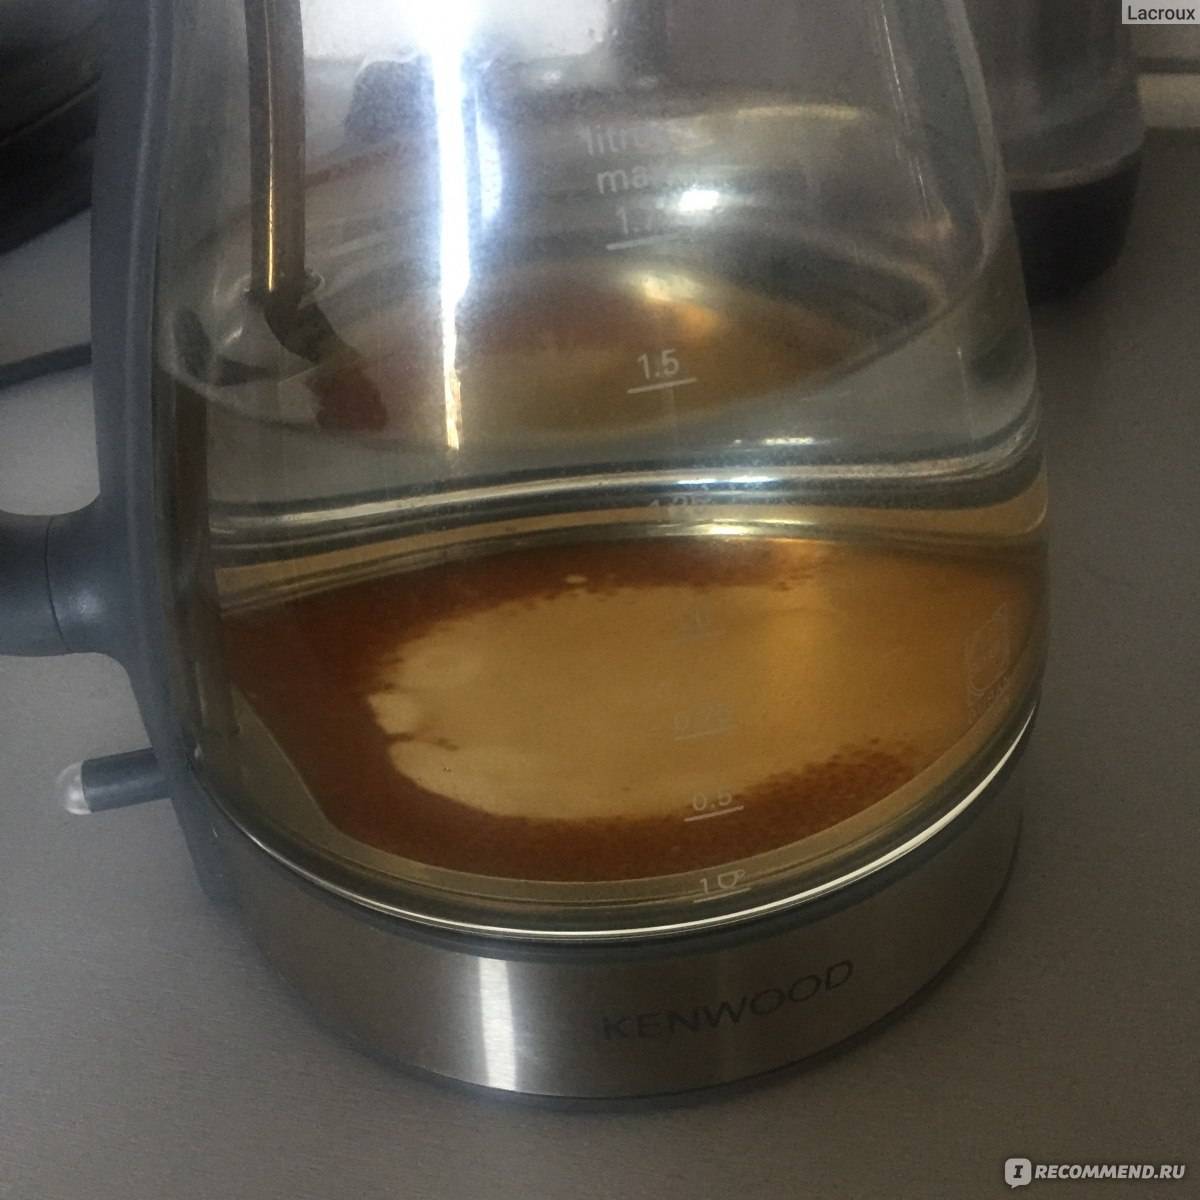 Как очистить чайник от ржавчины внутри: электрический и обычный